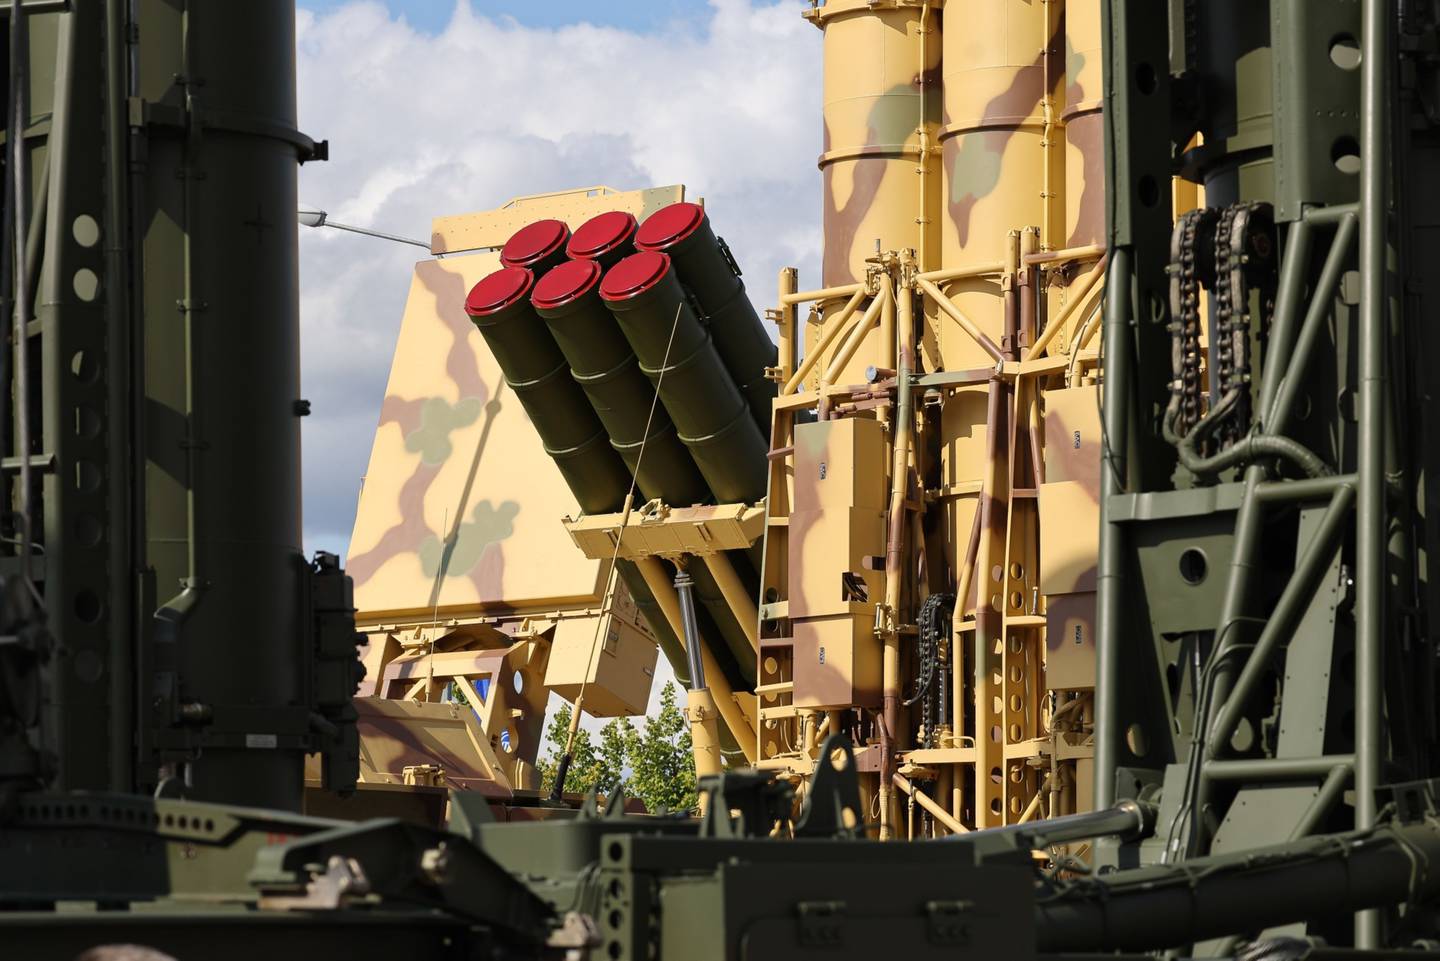 Un sistema de misiles antiaéreos, en la Exposición del Ejército 2021 en Moscú en agosto. Fotógrafo: Andrey Rudakov/Bloombergdfd